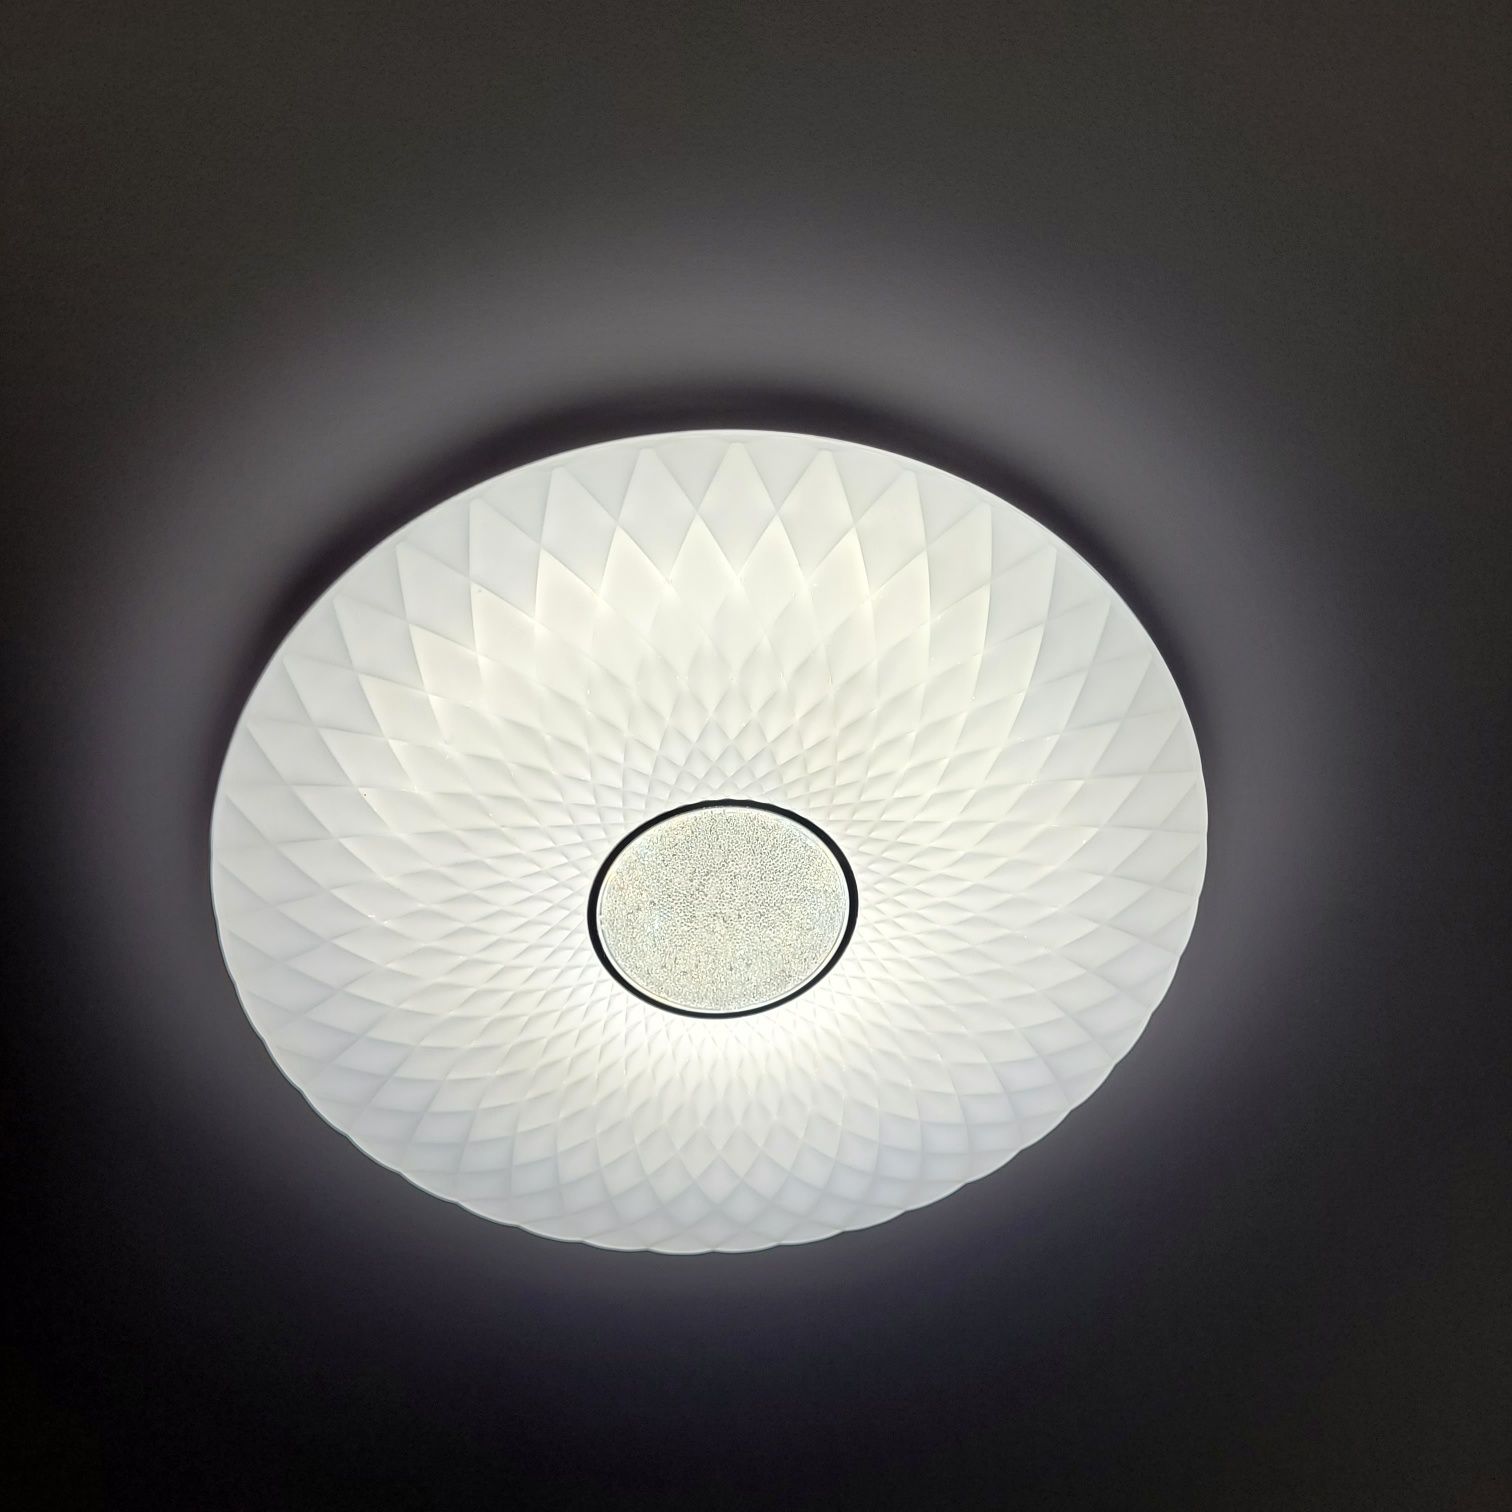 Ремкомплект для любого LED светодиодного светильника